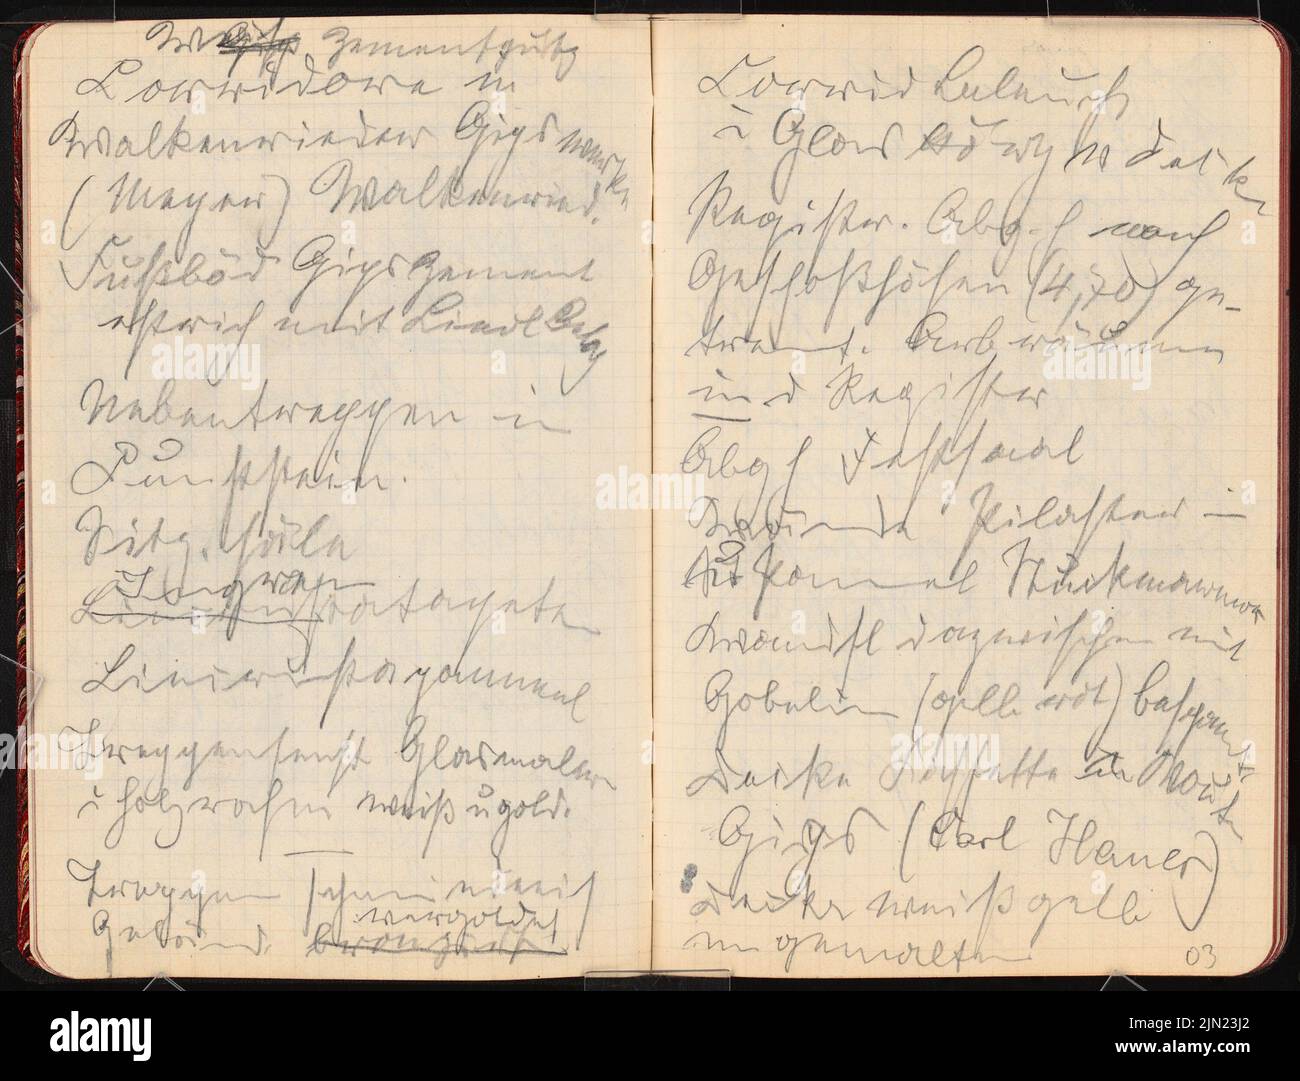 Lehmmübner Paul (1855-1916), sketchbook: Notes (sans dat.): Gros travaux de construction à Berlin. Chambre prussienne des représentants et des mansions, notes. Crayon sur papier, 15,4 x 20,2 cm (y compris les bords de numérisation) Banque D'Images